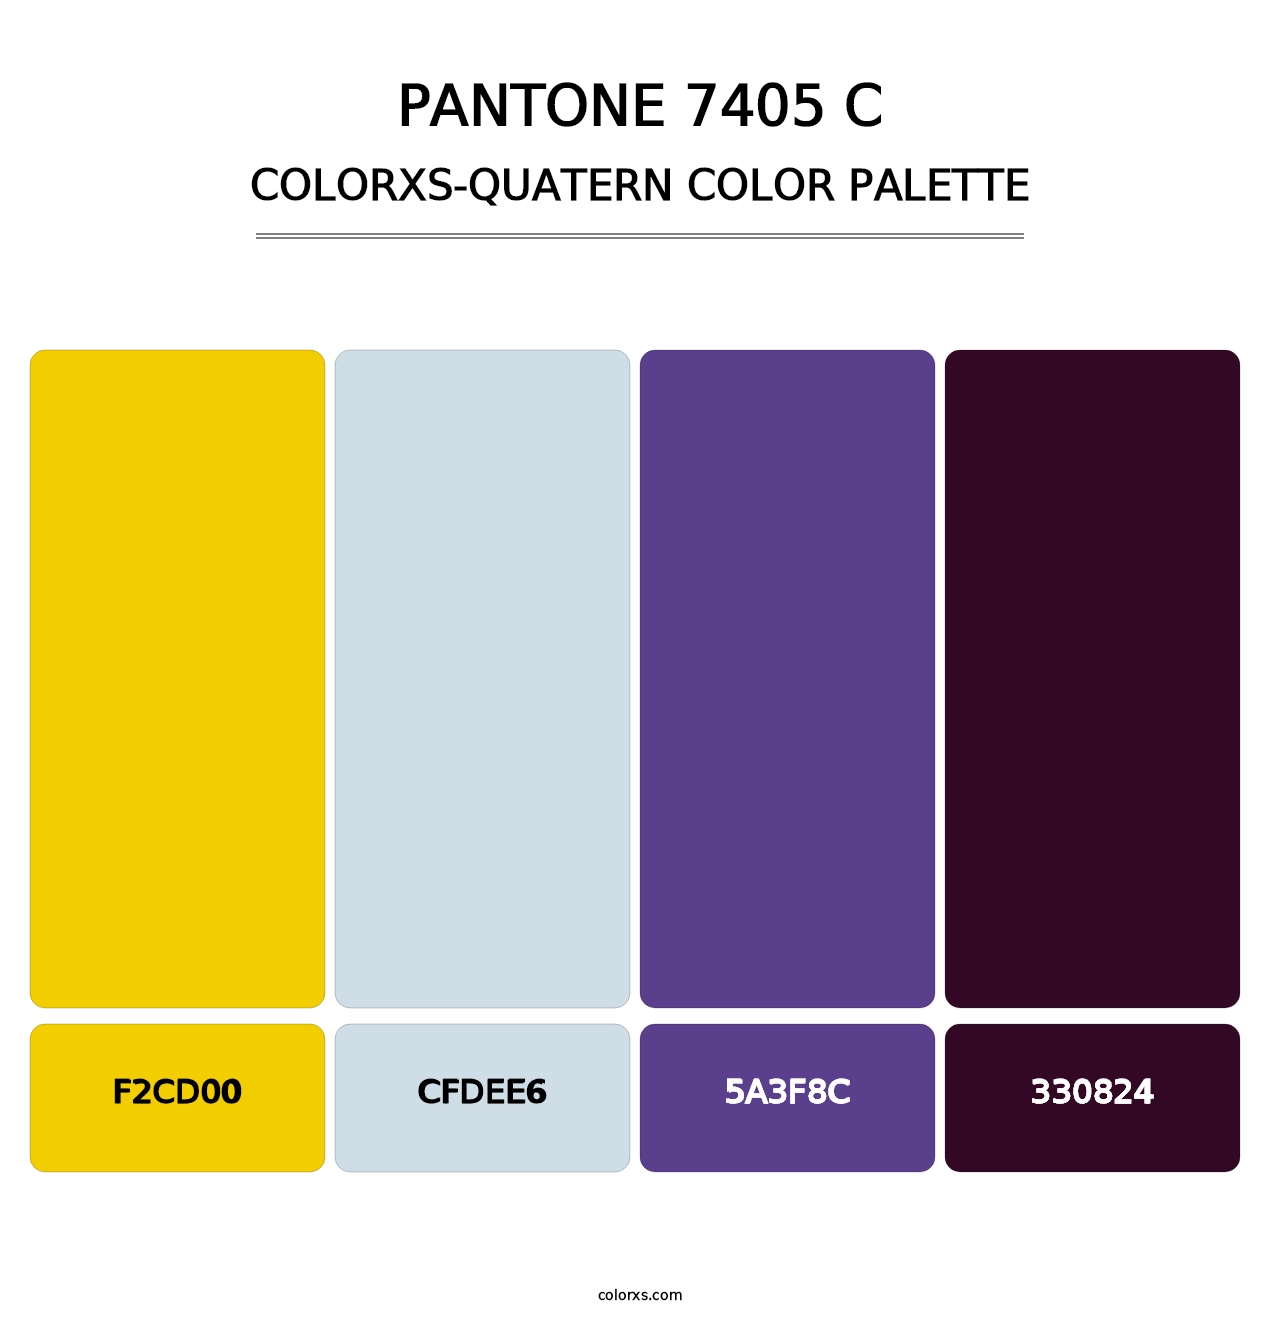 PANTONE 7405 C - Colorxs Quatern Palette